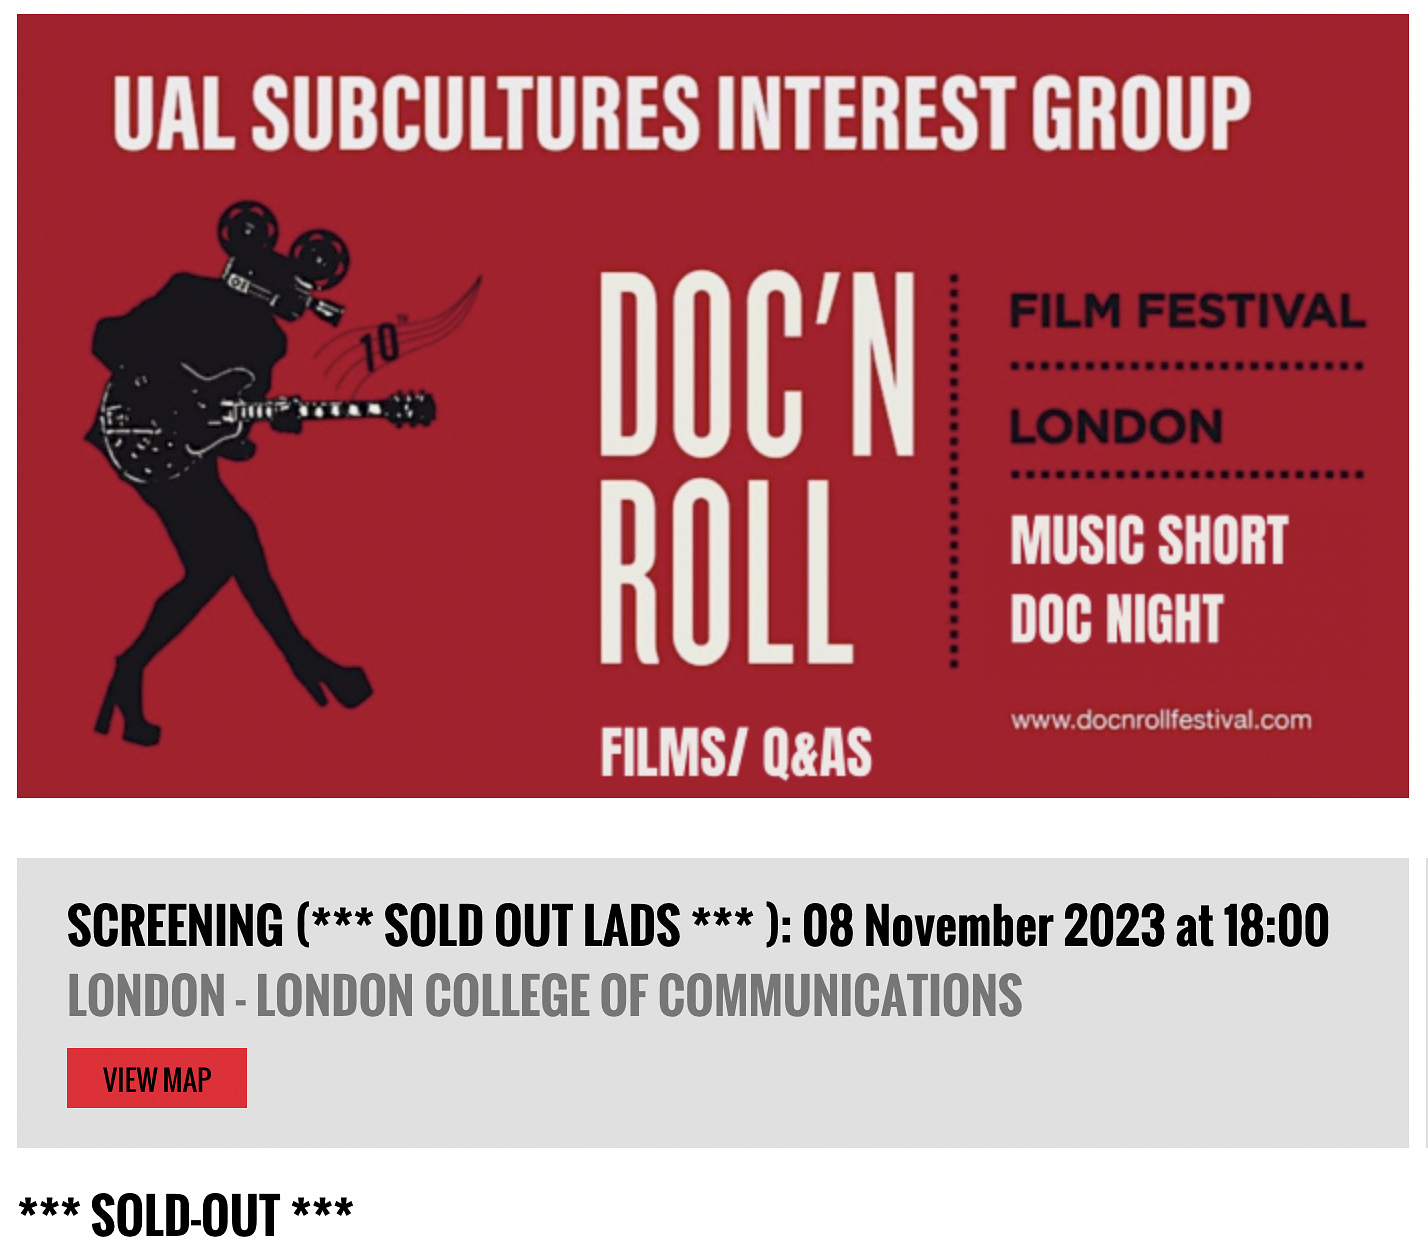 Doc'nRoll Film Festival: Short Film Screening